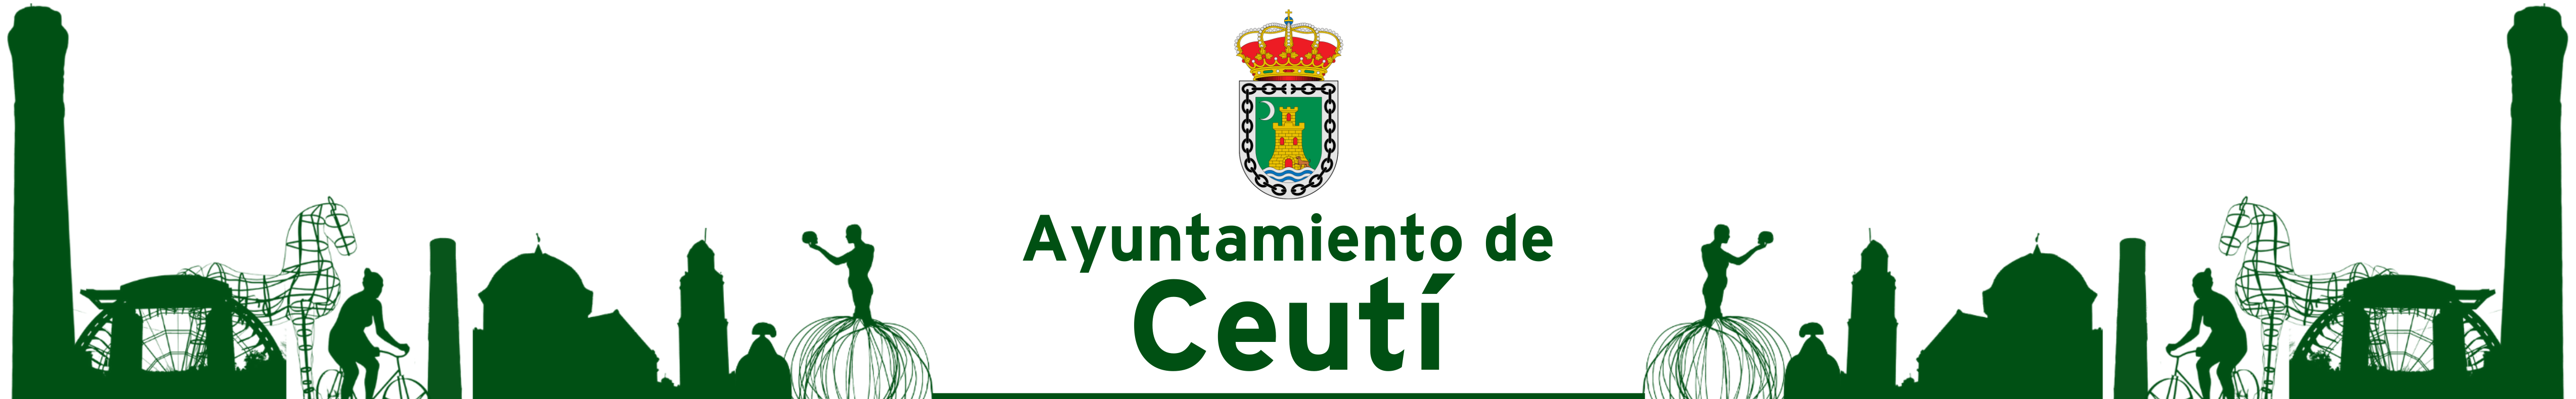 Ayuntamiento de Ceutí